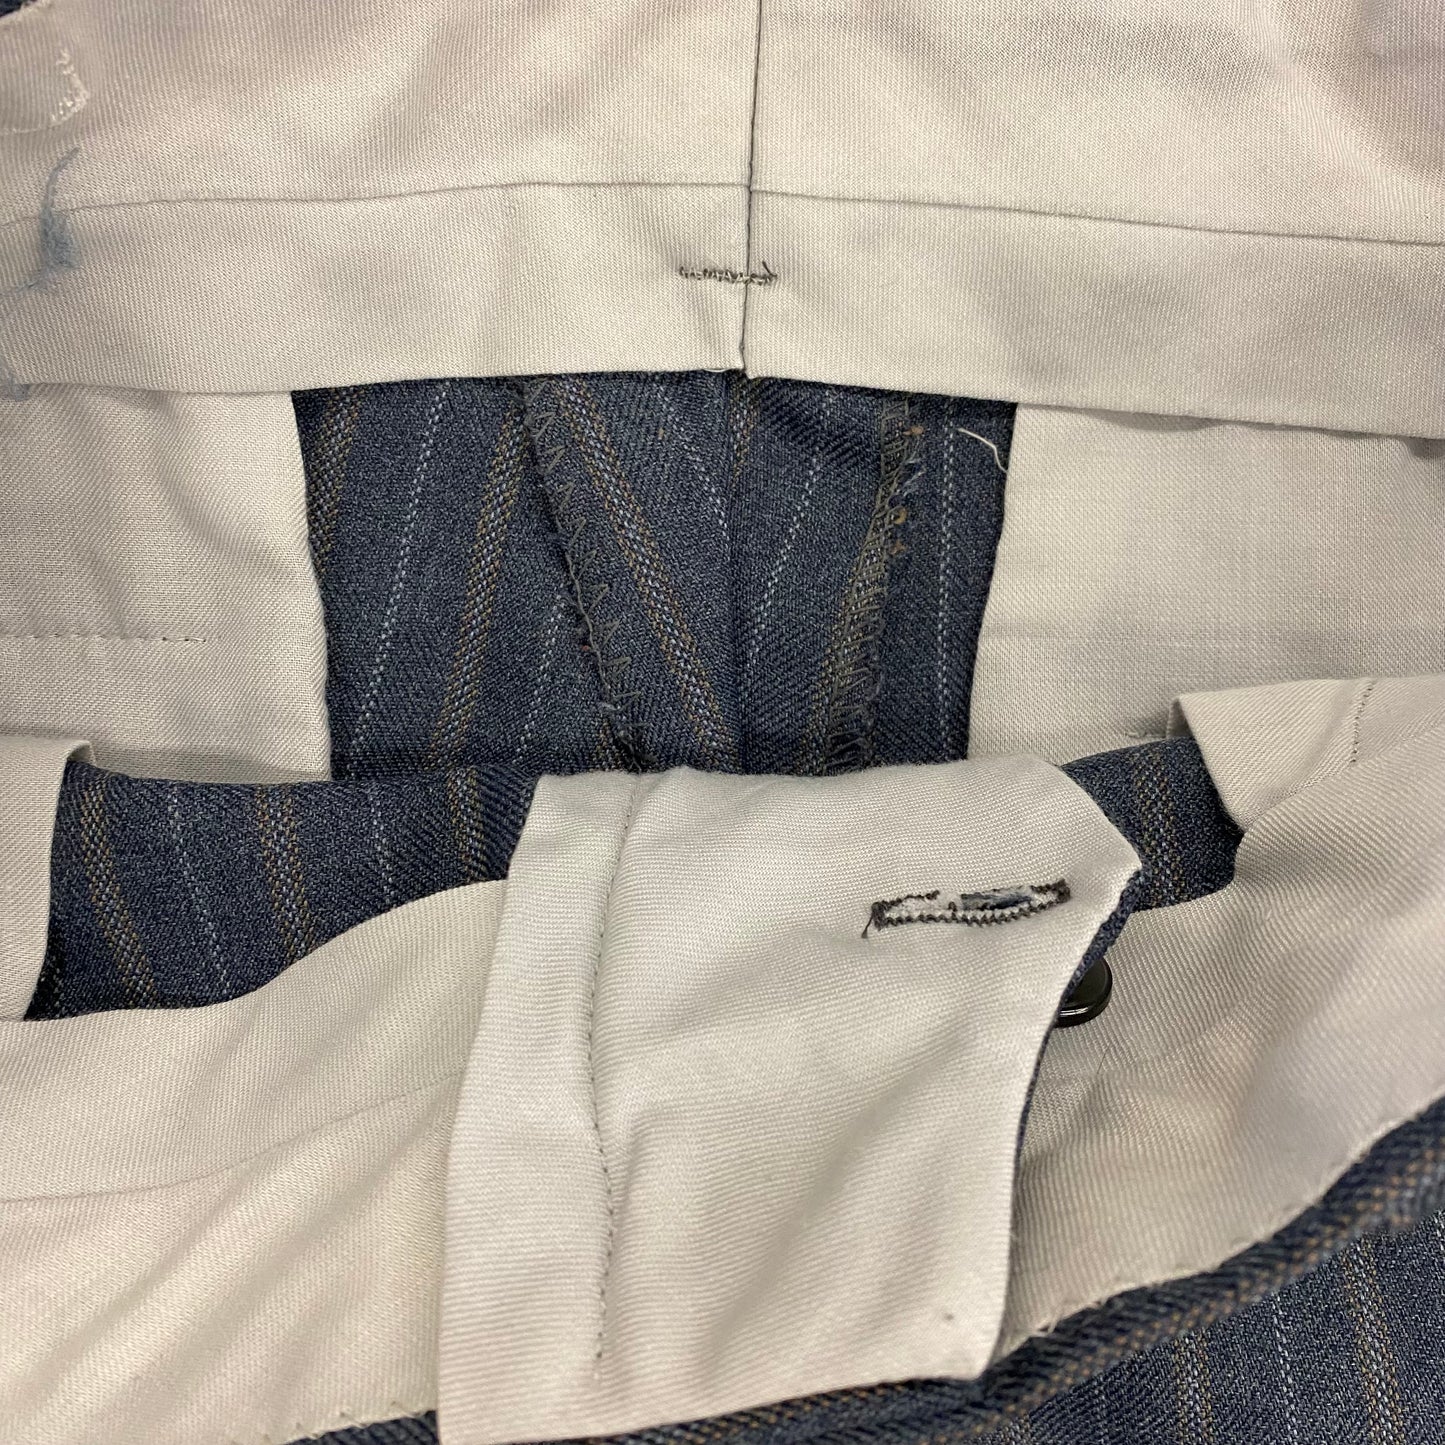 1980s Striped Cotton Poly Blend Pants - 29"x27"